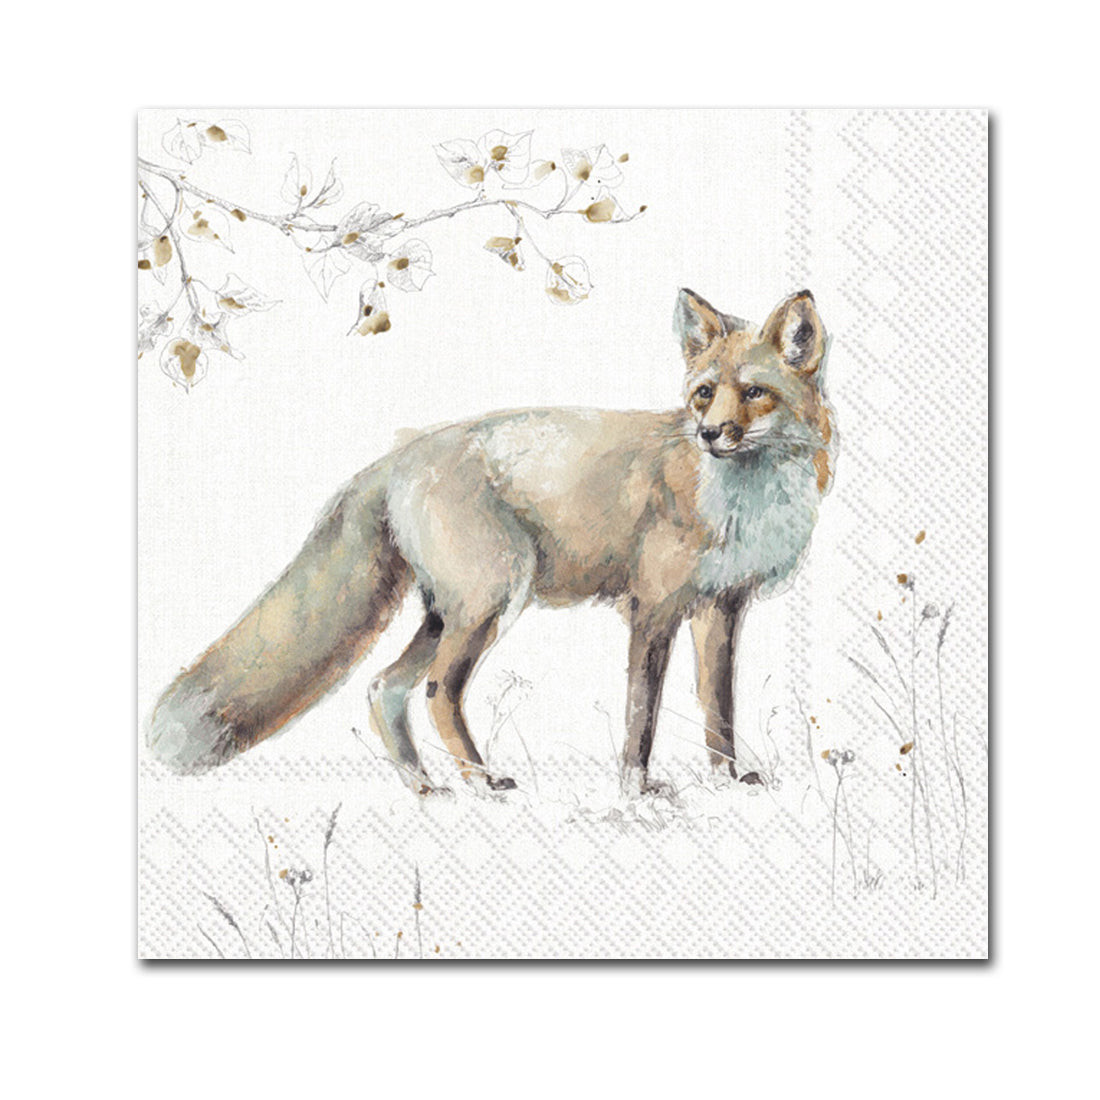 Recipe Book - Wildflower – Copper Fox Co